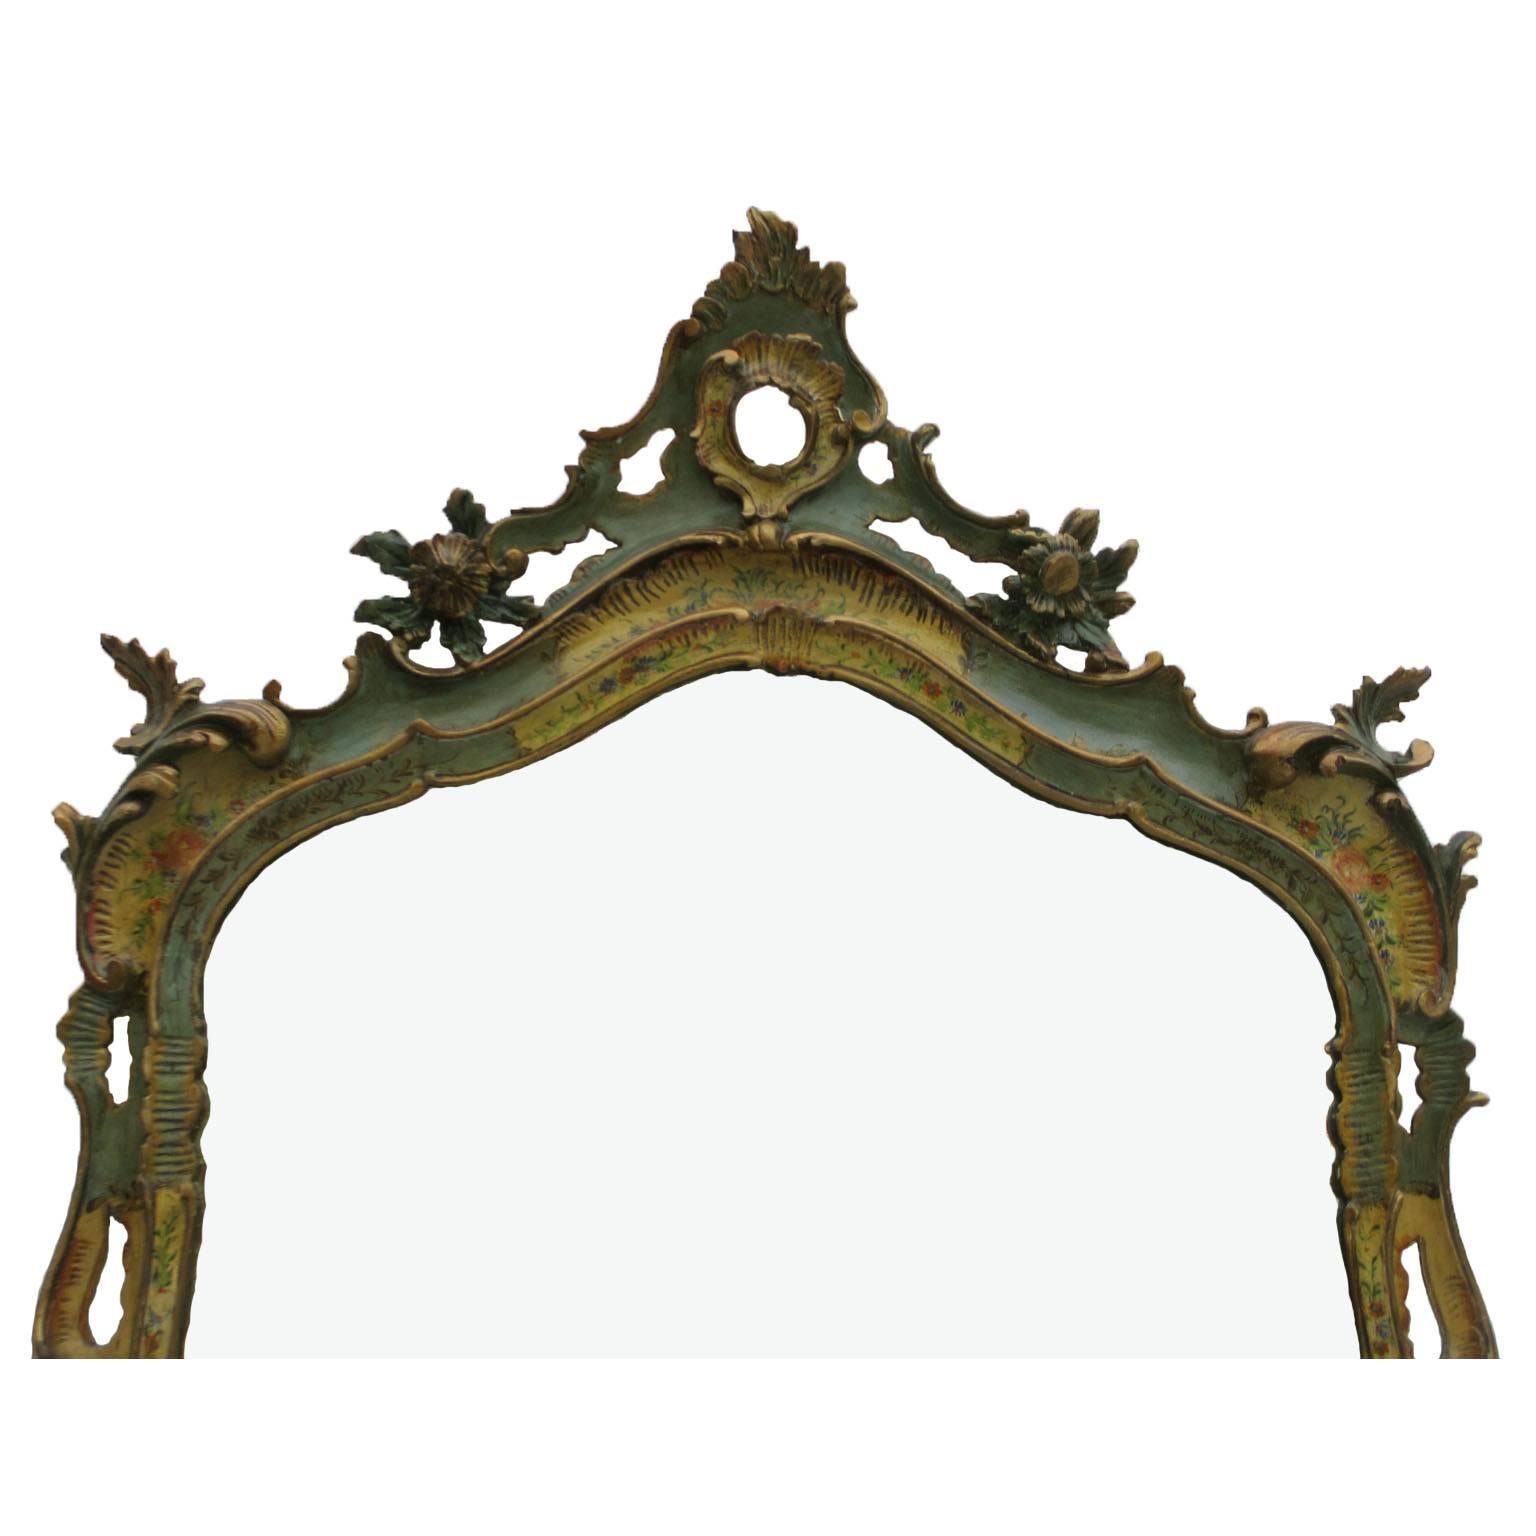 Rare console et miroir en bois sculpté italien du XIXe siècle au XXe siècle, à décor floral et peint en polychromie. La console de forme bombée serpentine est décorée de bouquets floraux dorés et colorés sur un fond peint en vert et ivoire, le